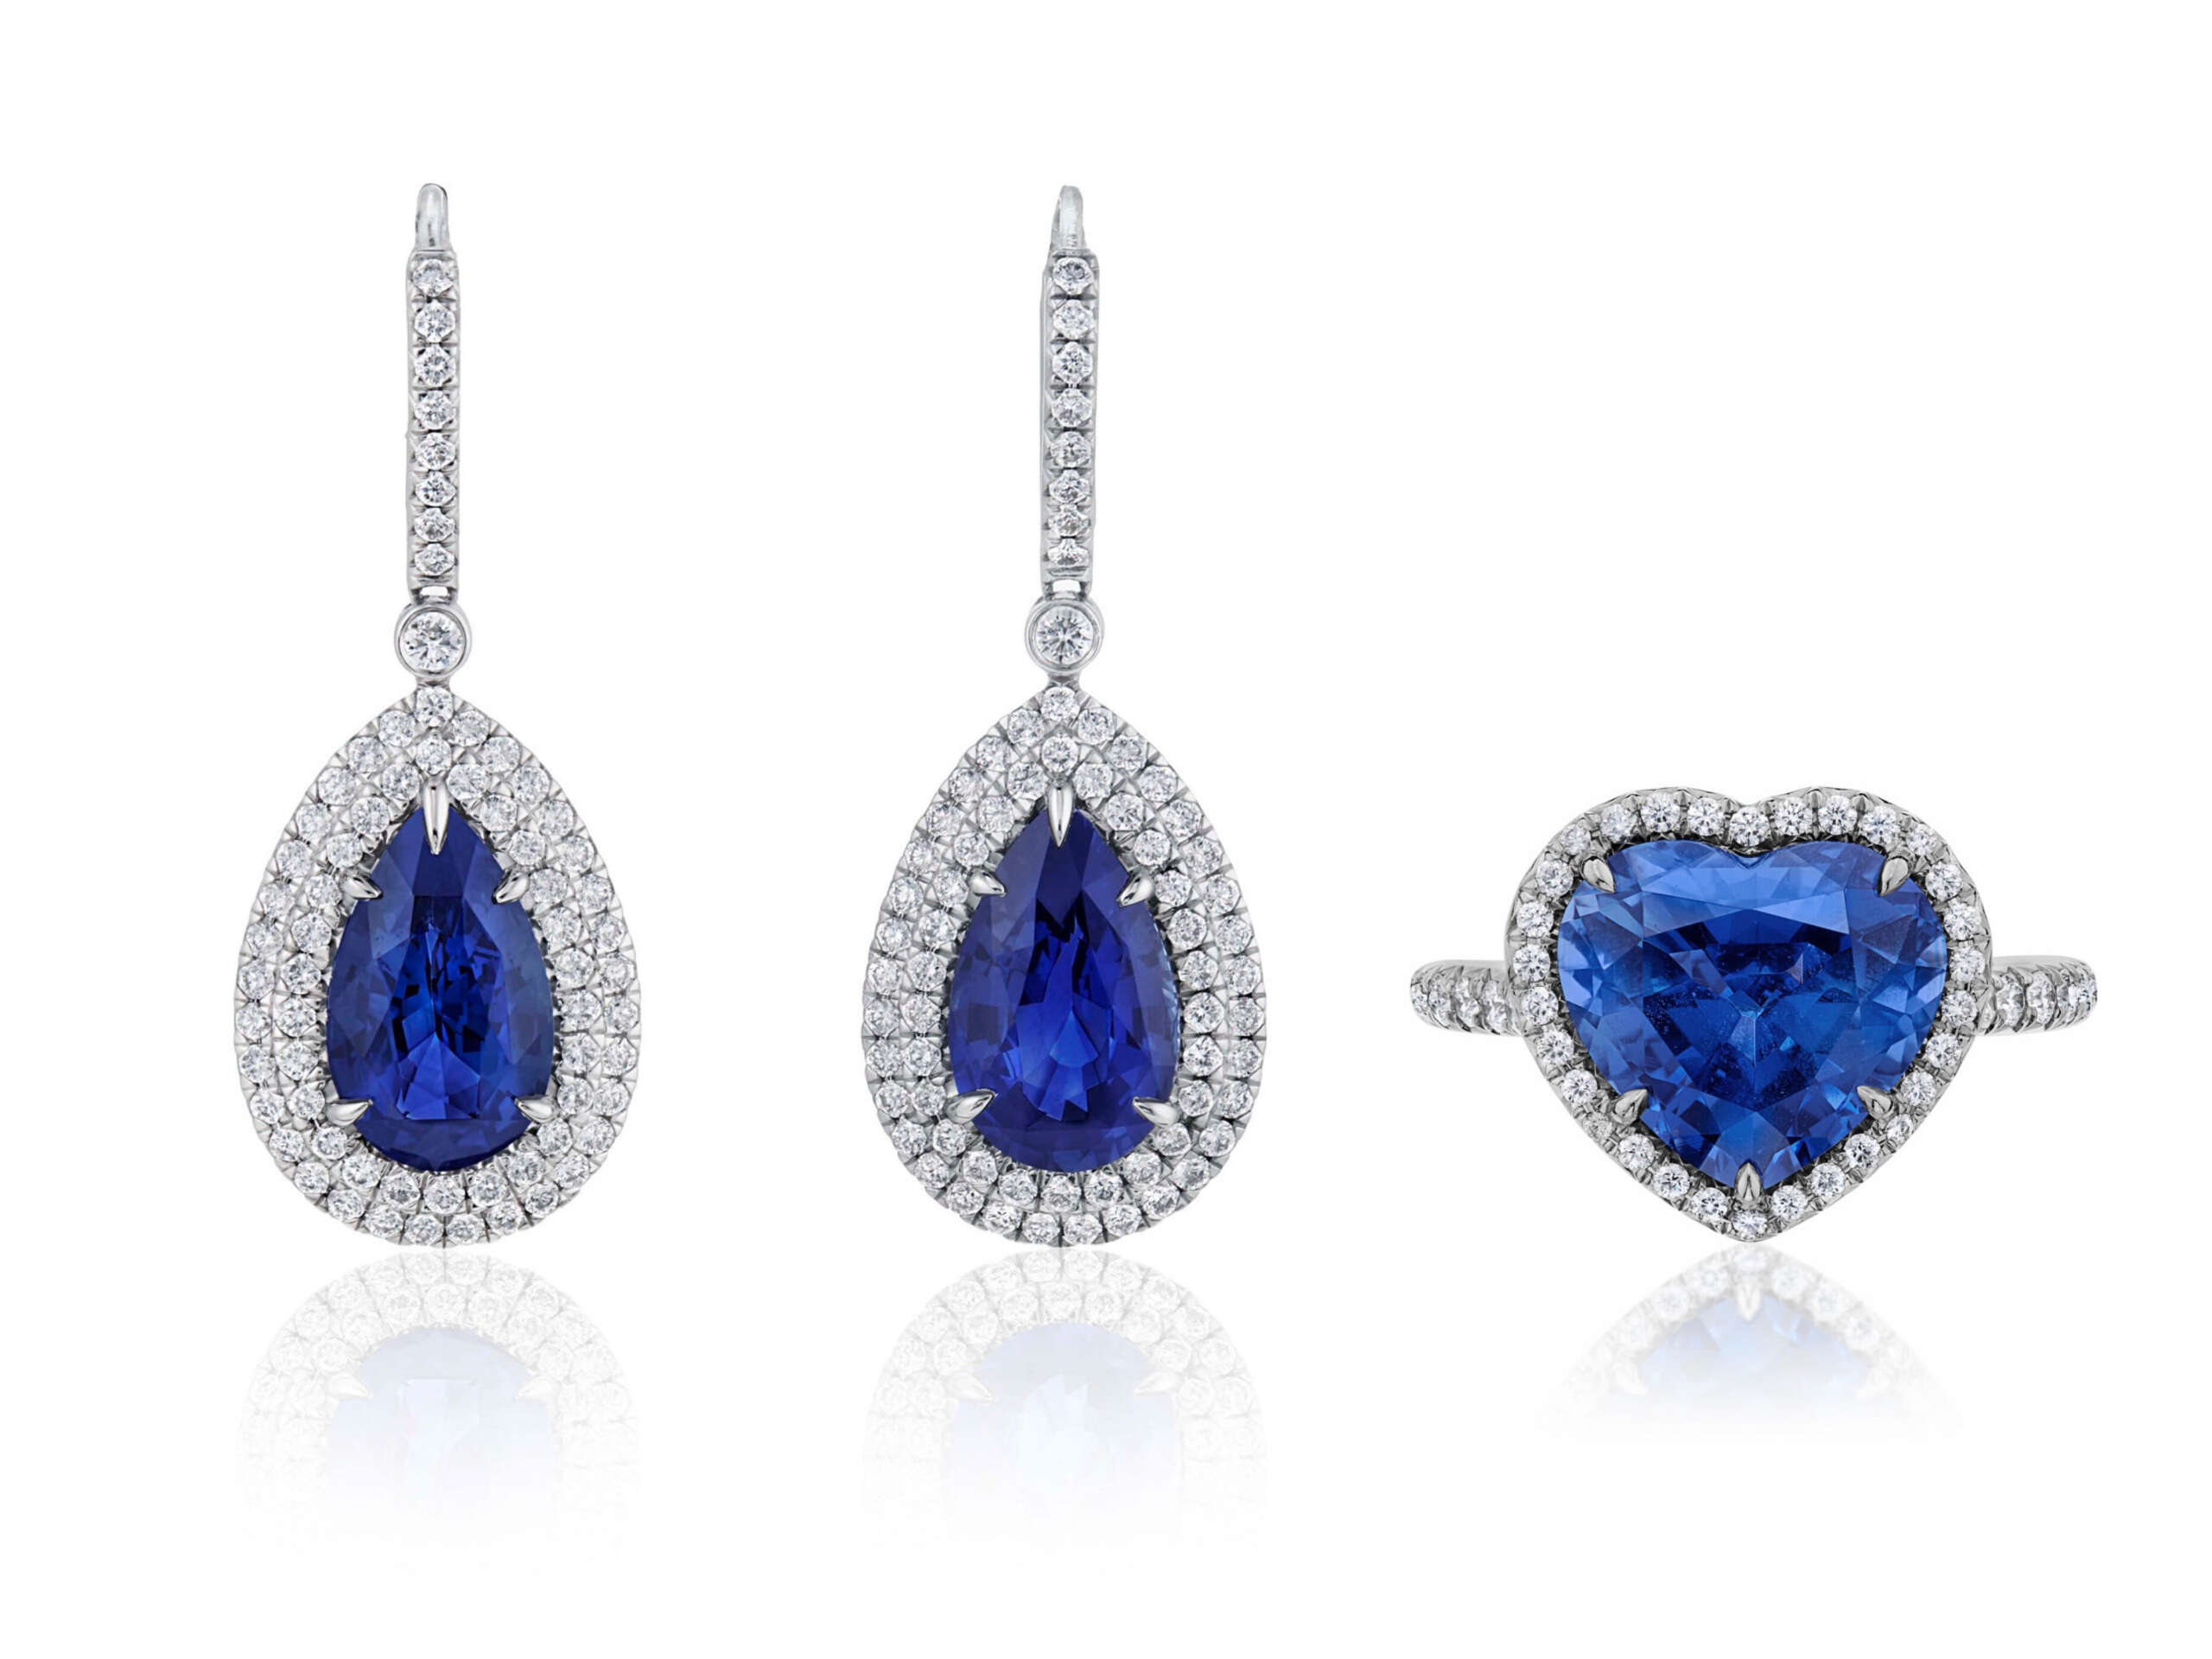 Foto orecchini e anello Tiffany con zaffiri blu e diamanti